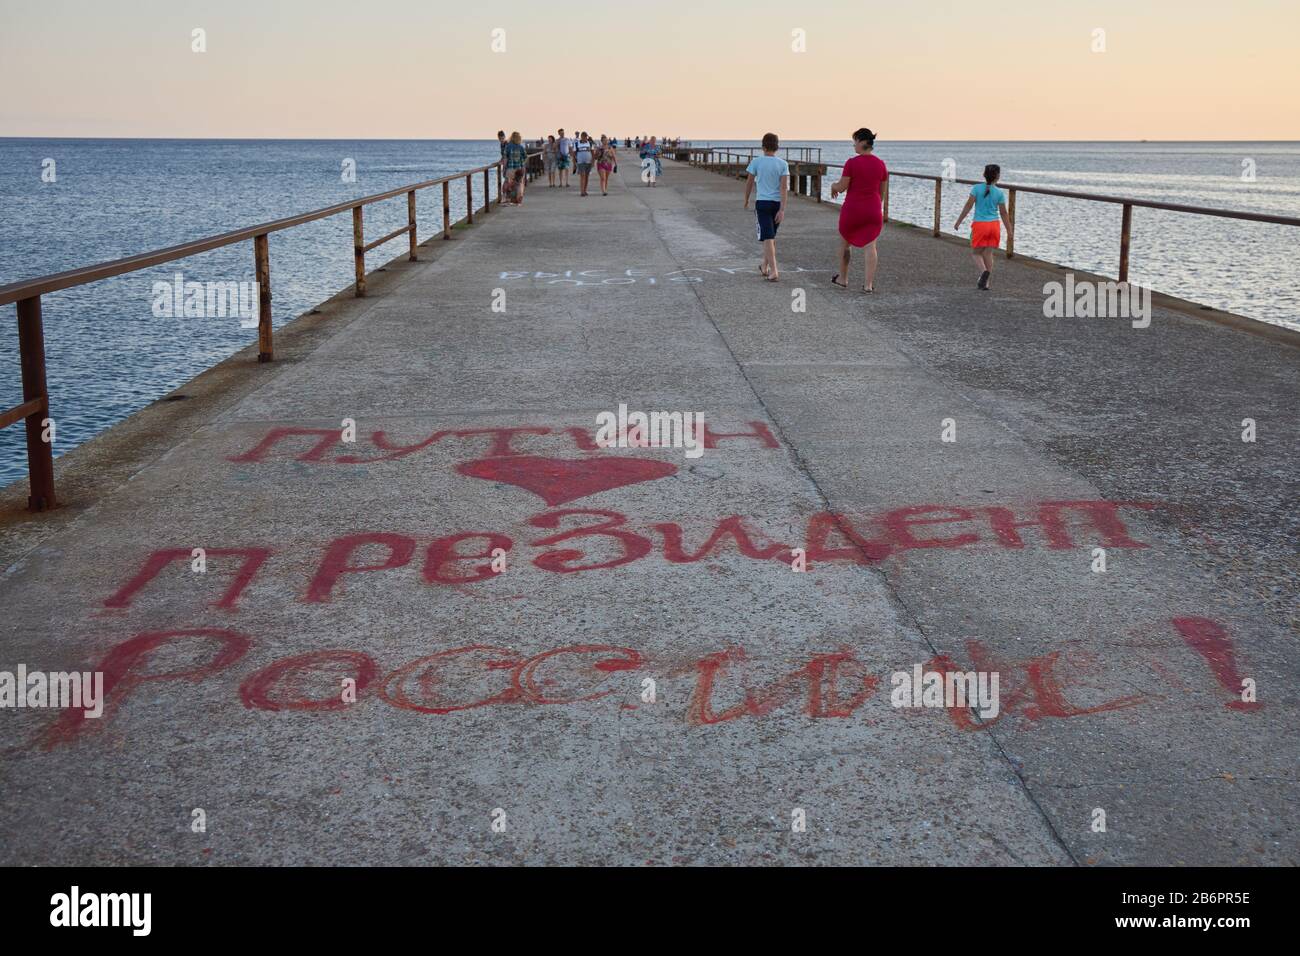 Lermontovo, Región de Krasnodar, Rusia, 22 de julio de 2019: En el muelle donde los turistas caminan, está escrita la inscripción "Putin es el Presidente de Rusia" Foto de stock